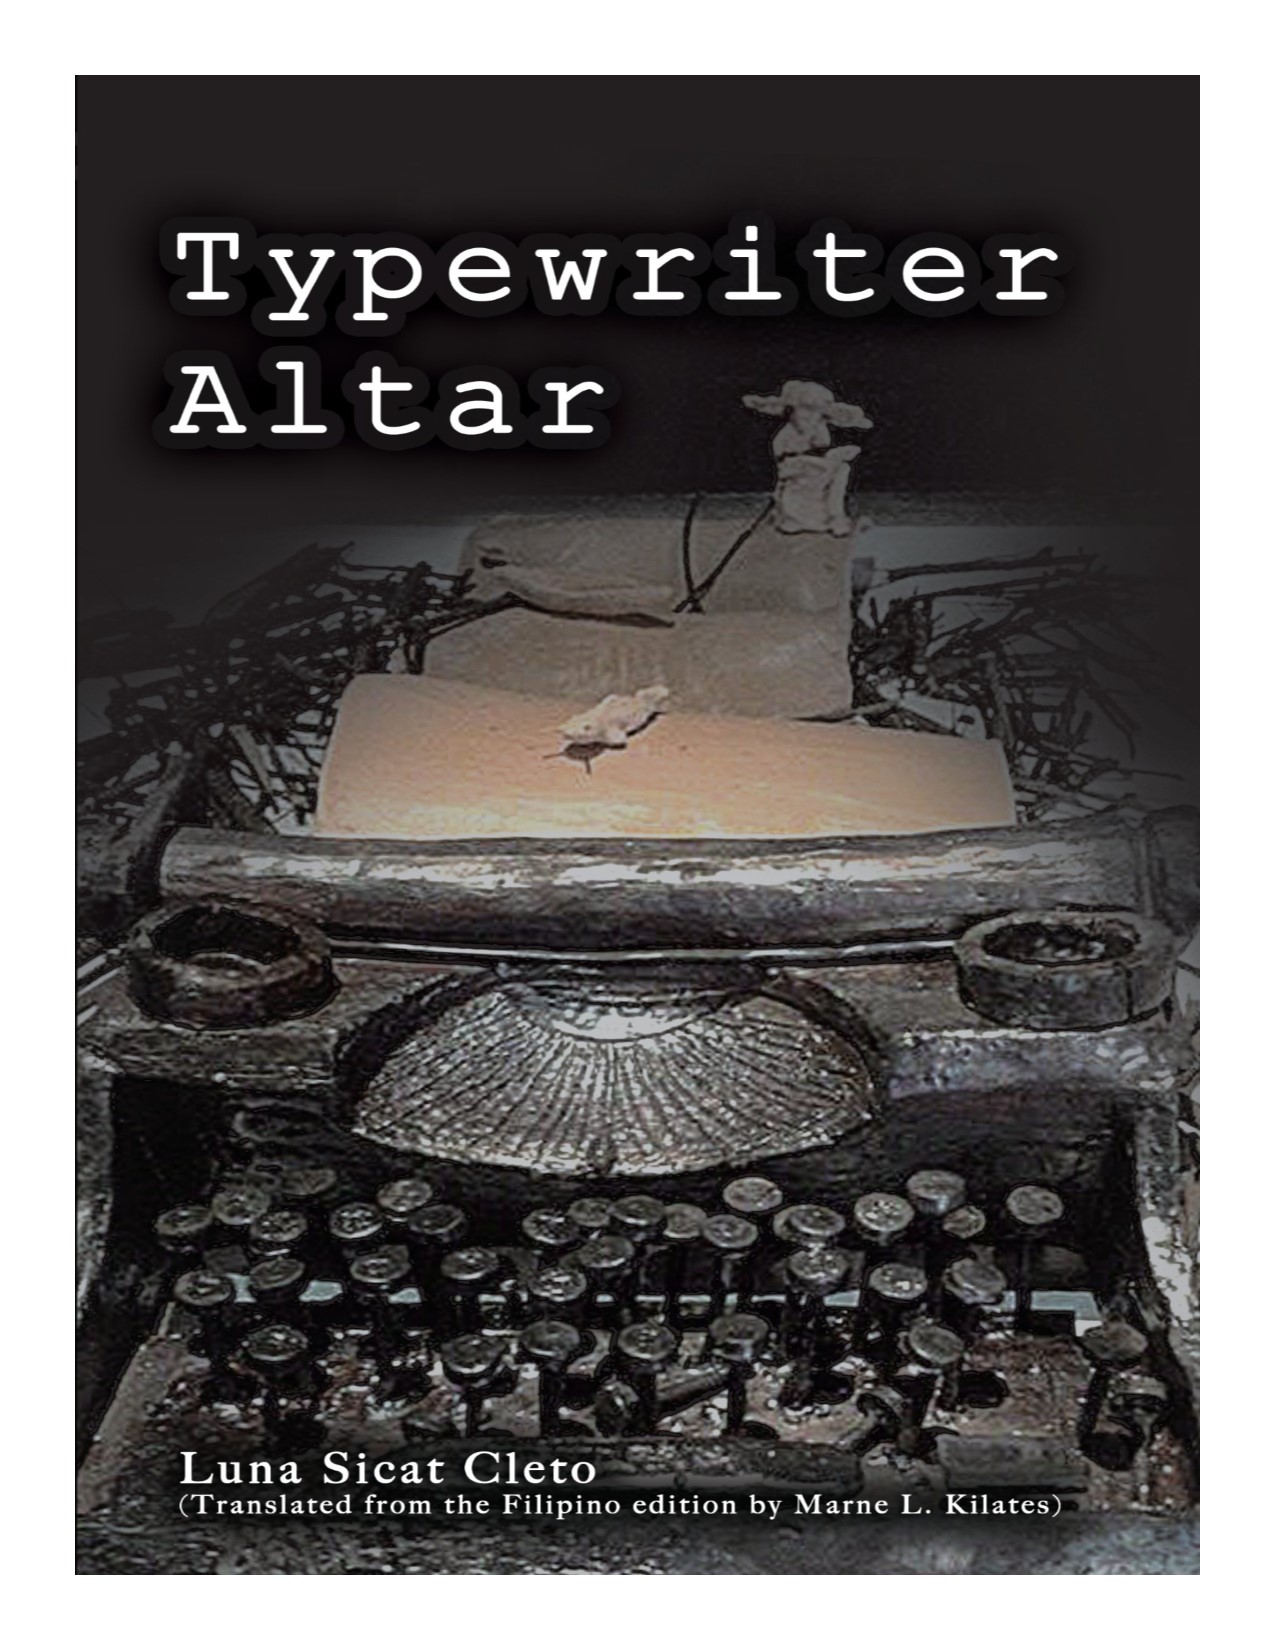 Typewriter altar